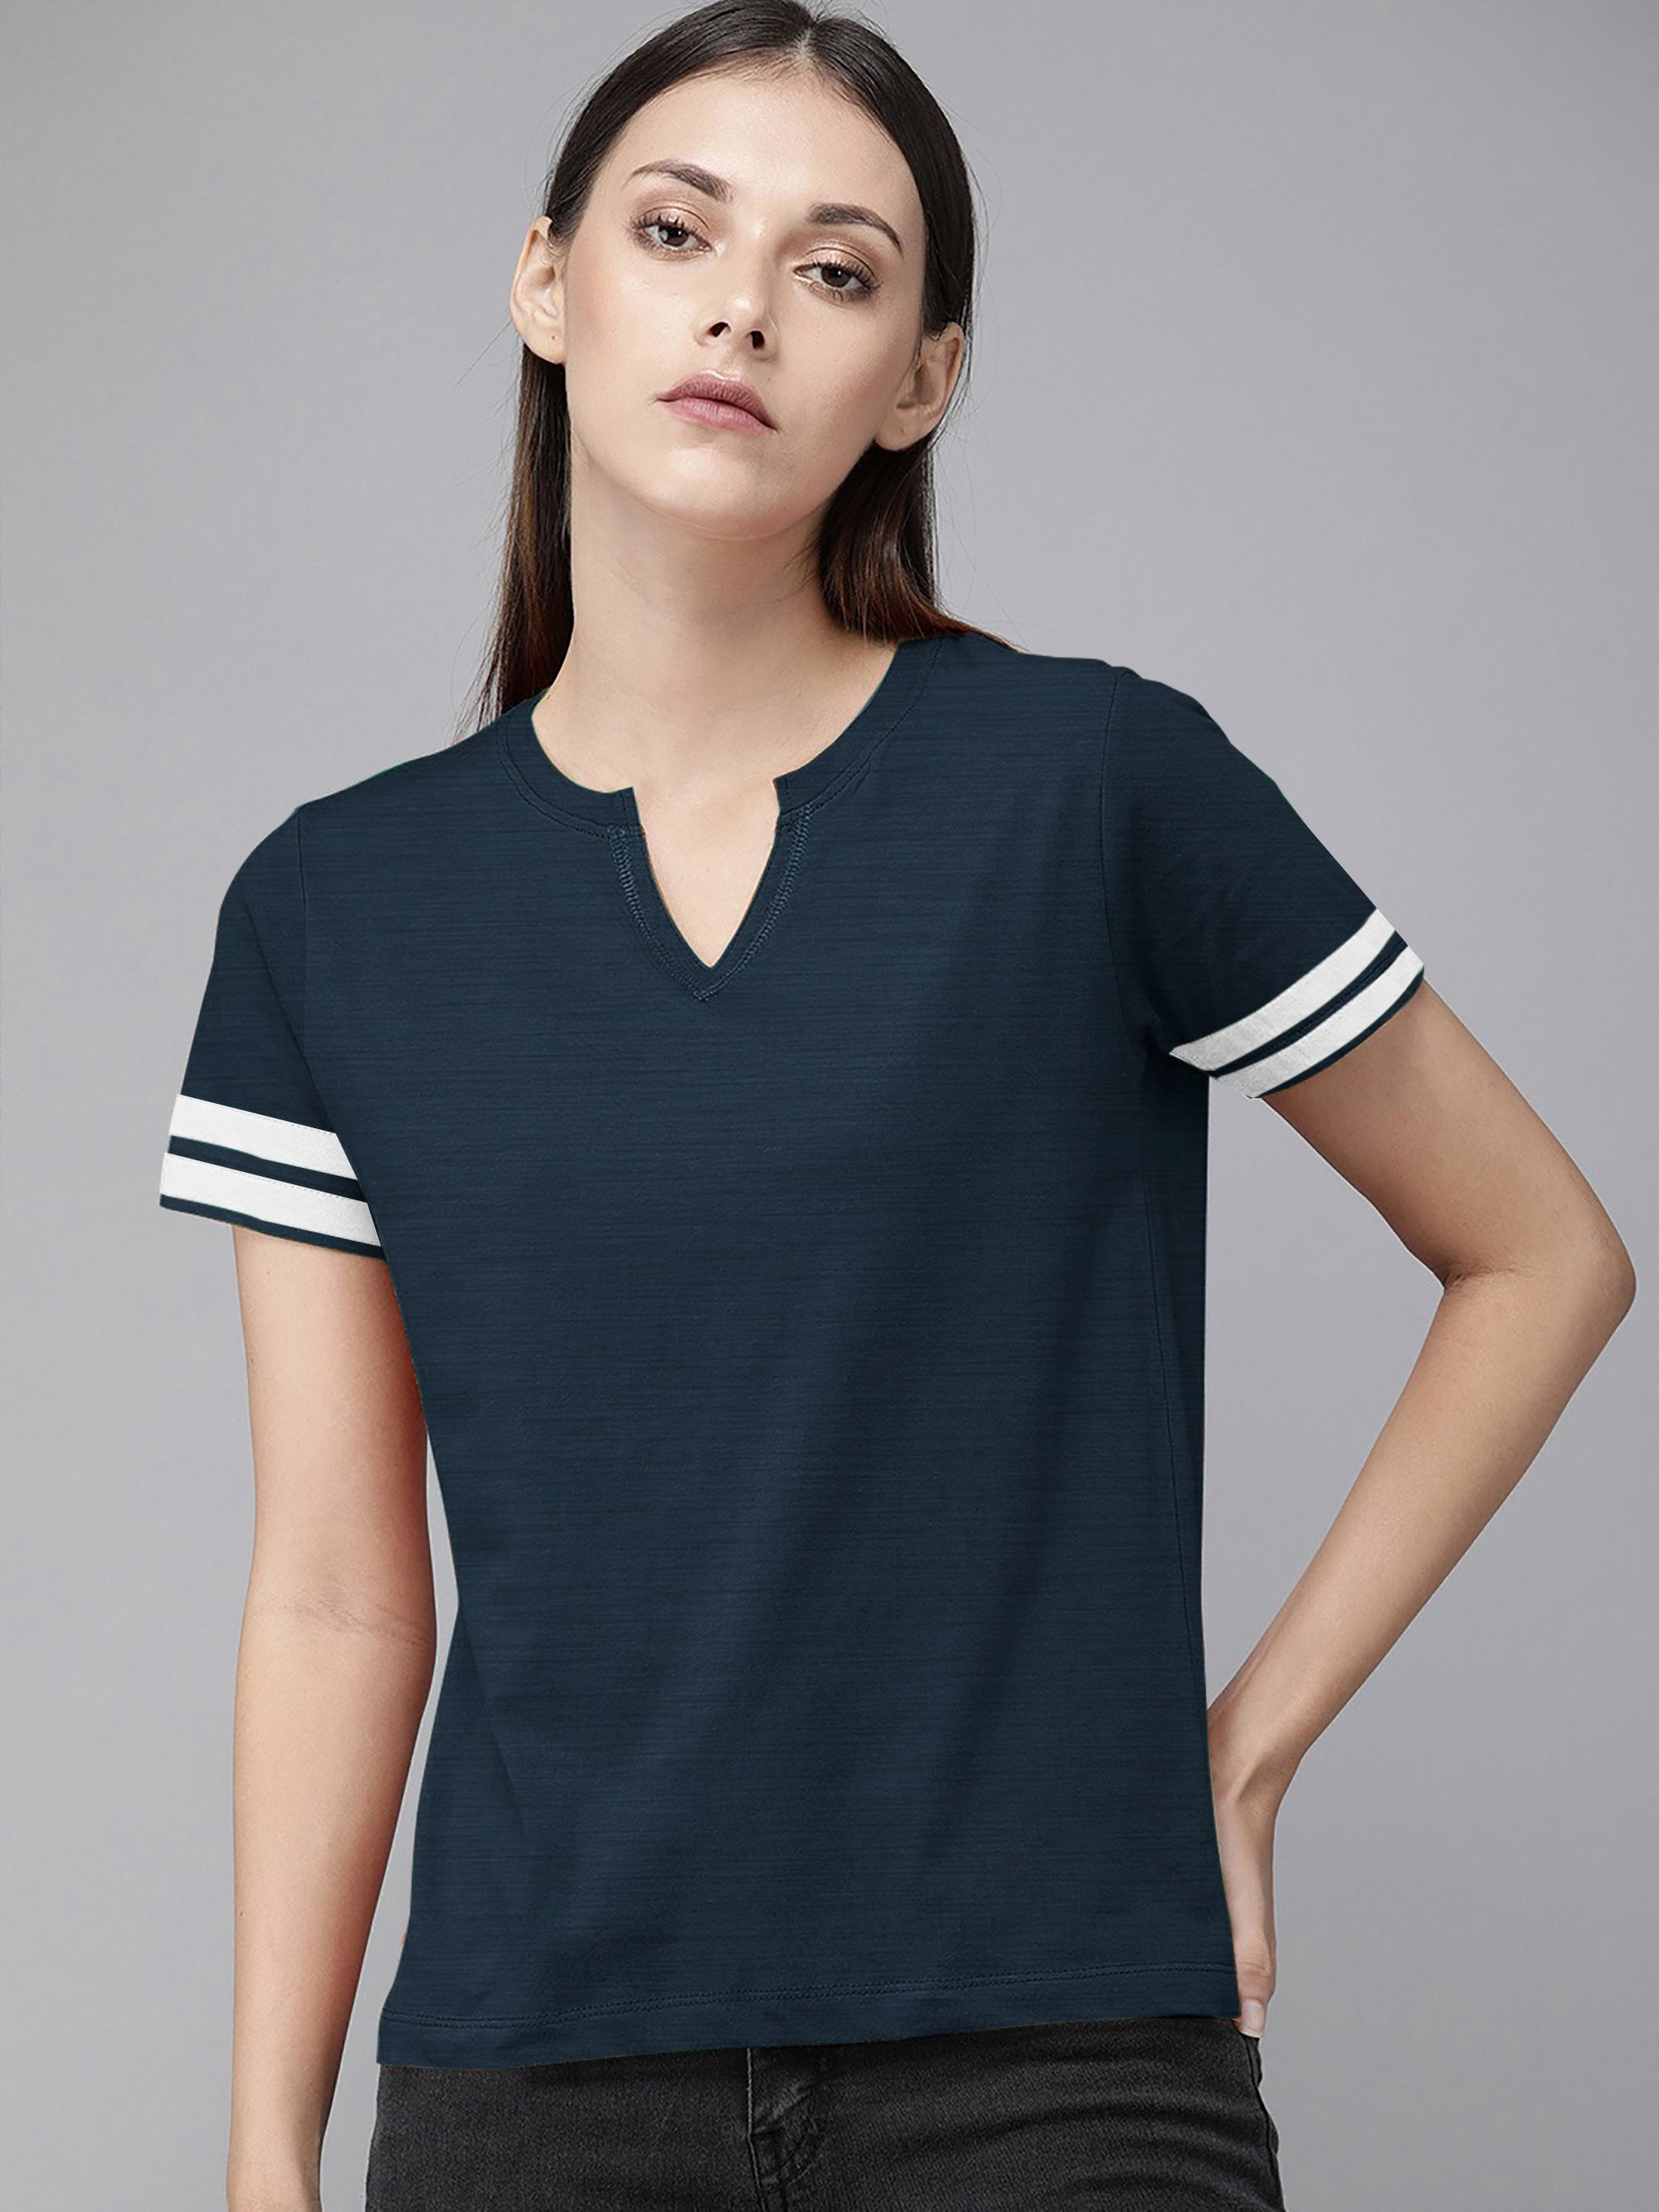 Majestic V Neck Half Sleeve Tee Shirt For Ladies-Navy Melange-SP1966